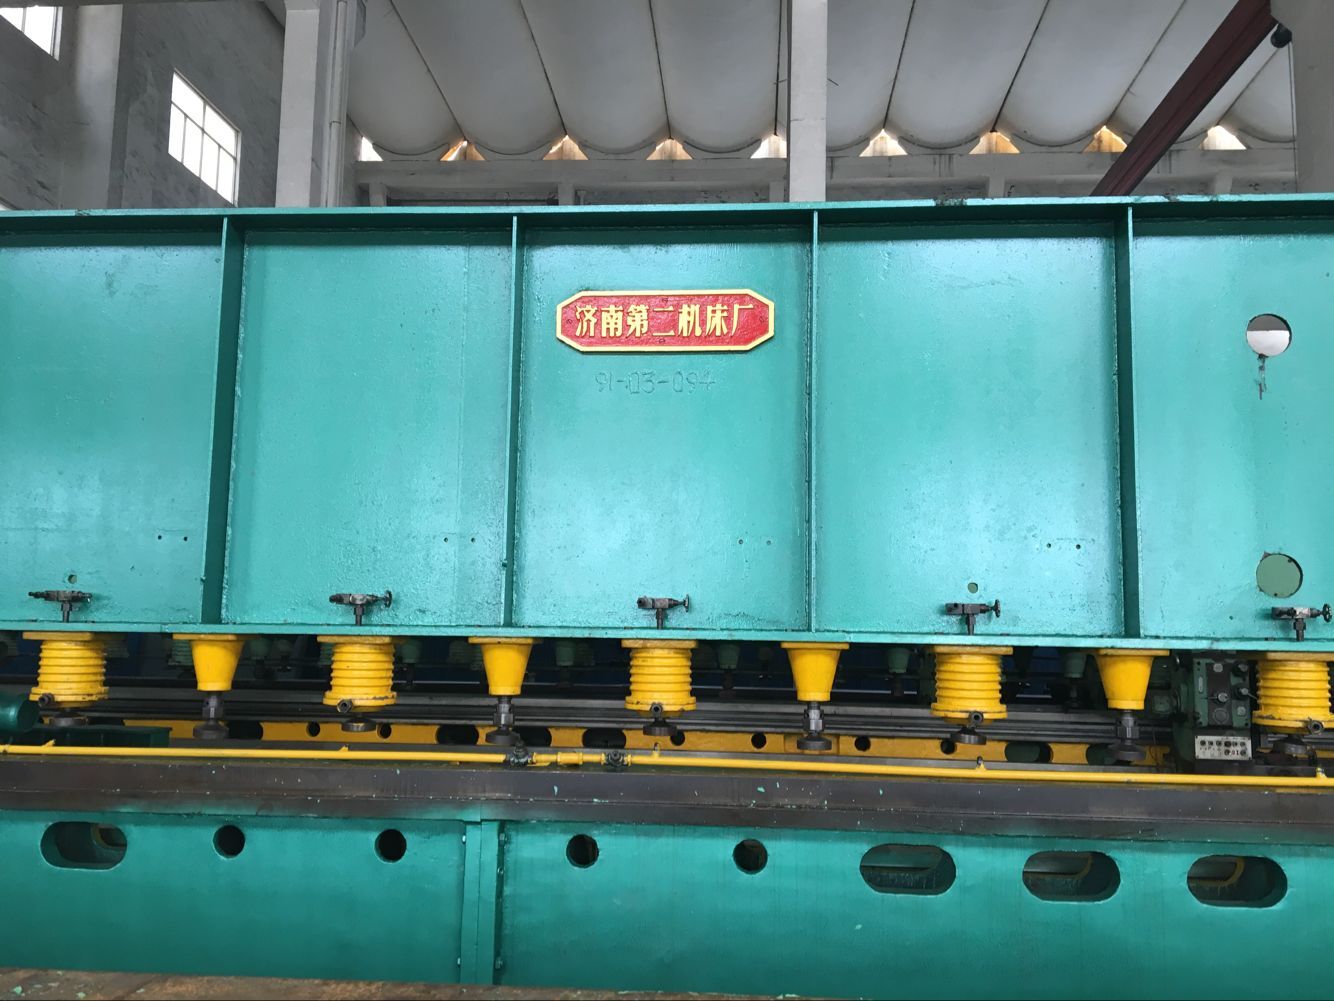 二手优质机床12米 刨边机 济南二机床厂 包安装调试